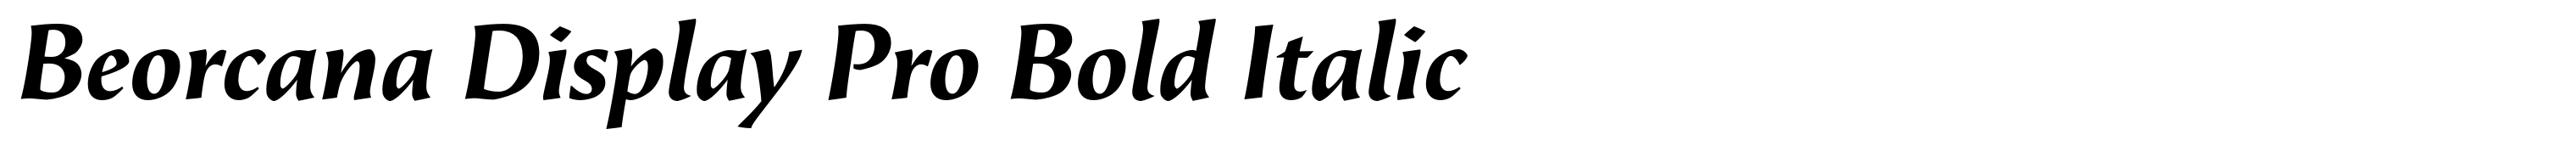 Beorcana Display Pro Bold Italic